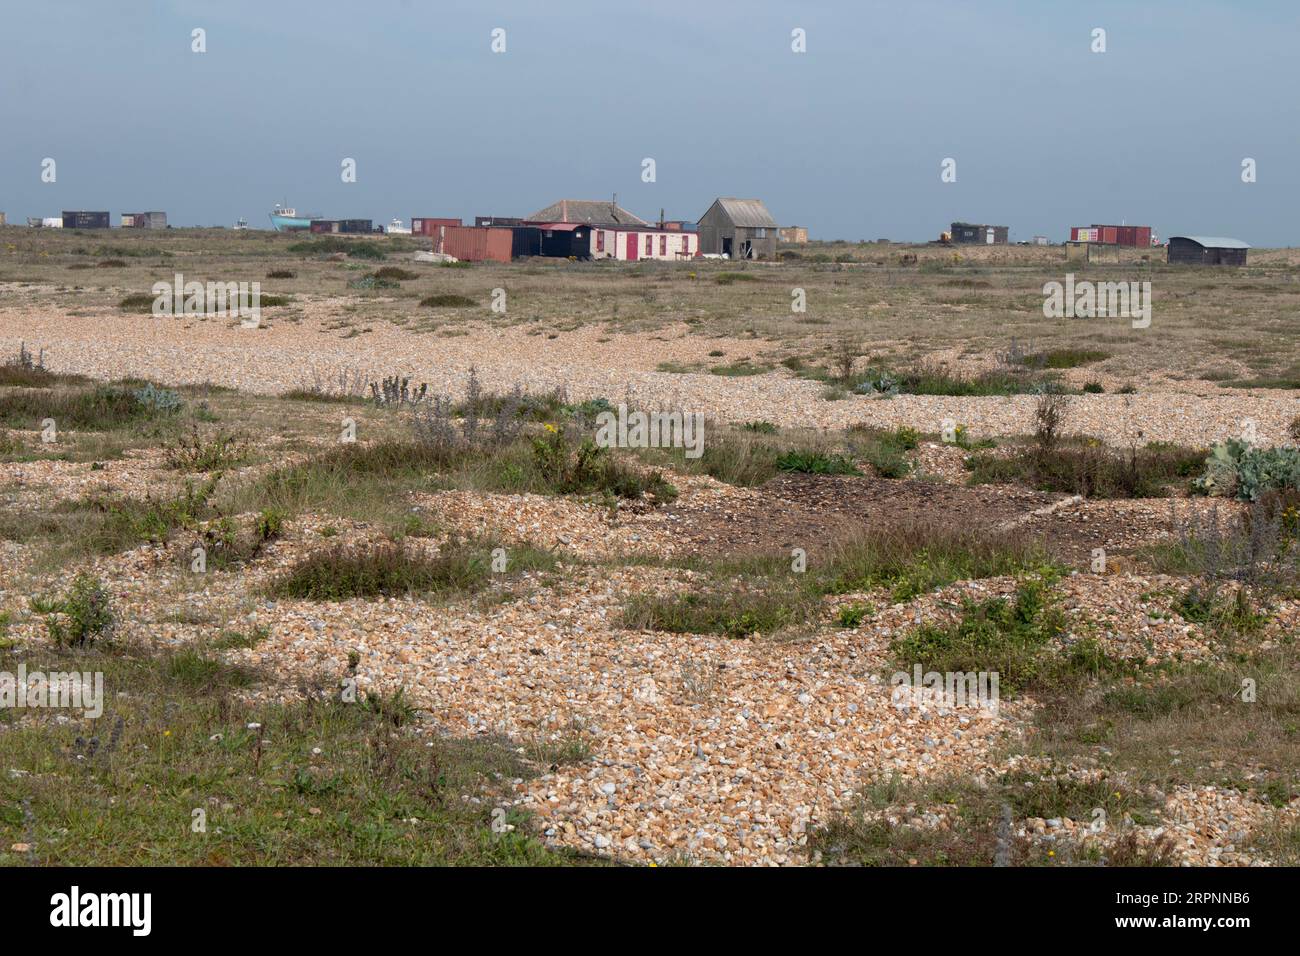 Cabanes de pêcheurs sur la plage de galets sur la côte à Dungeness, Kent. Angleterre Royaume-Uni Banque D'Images